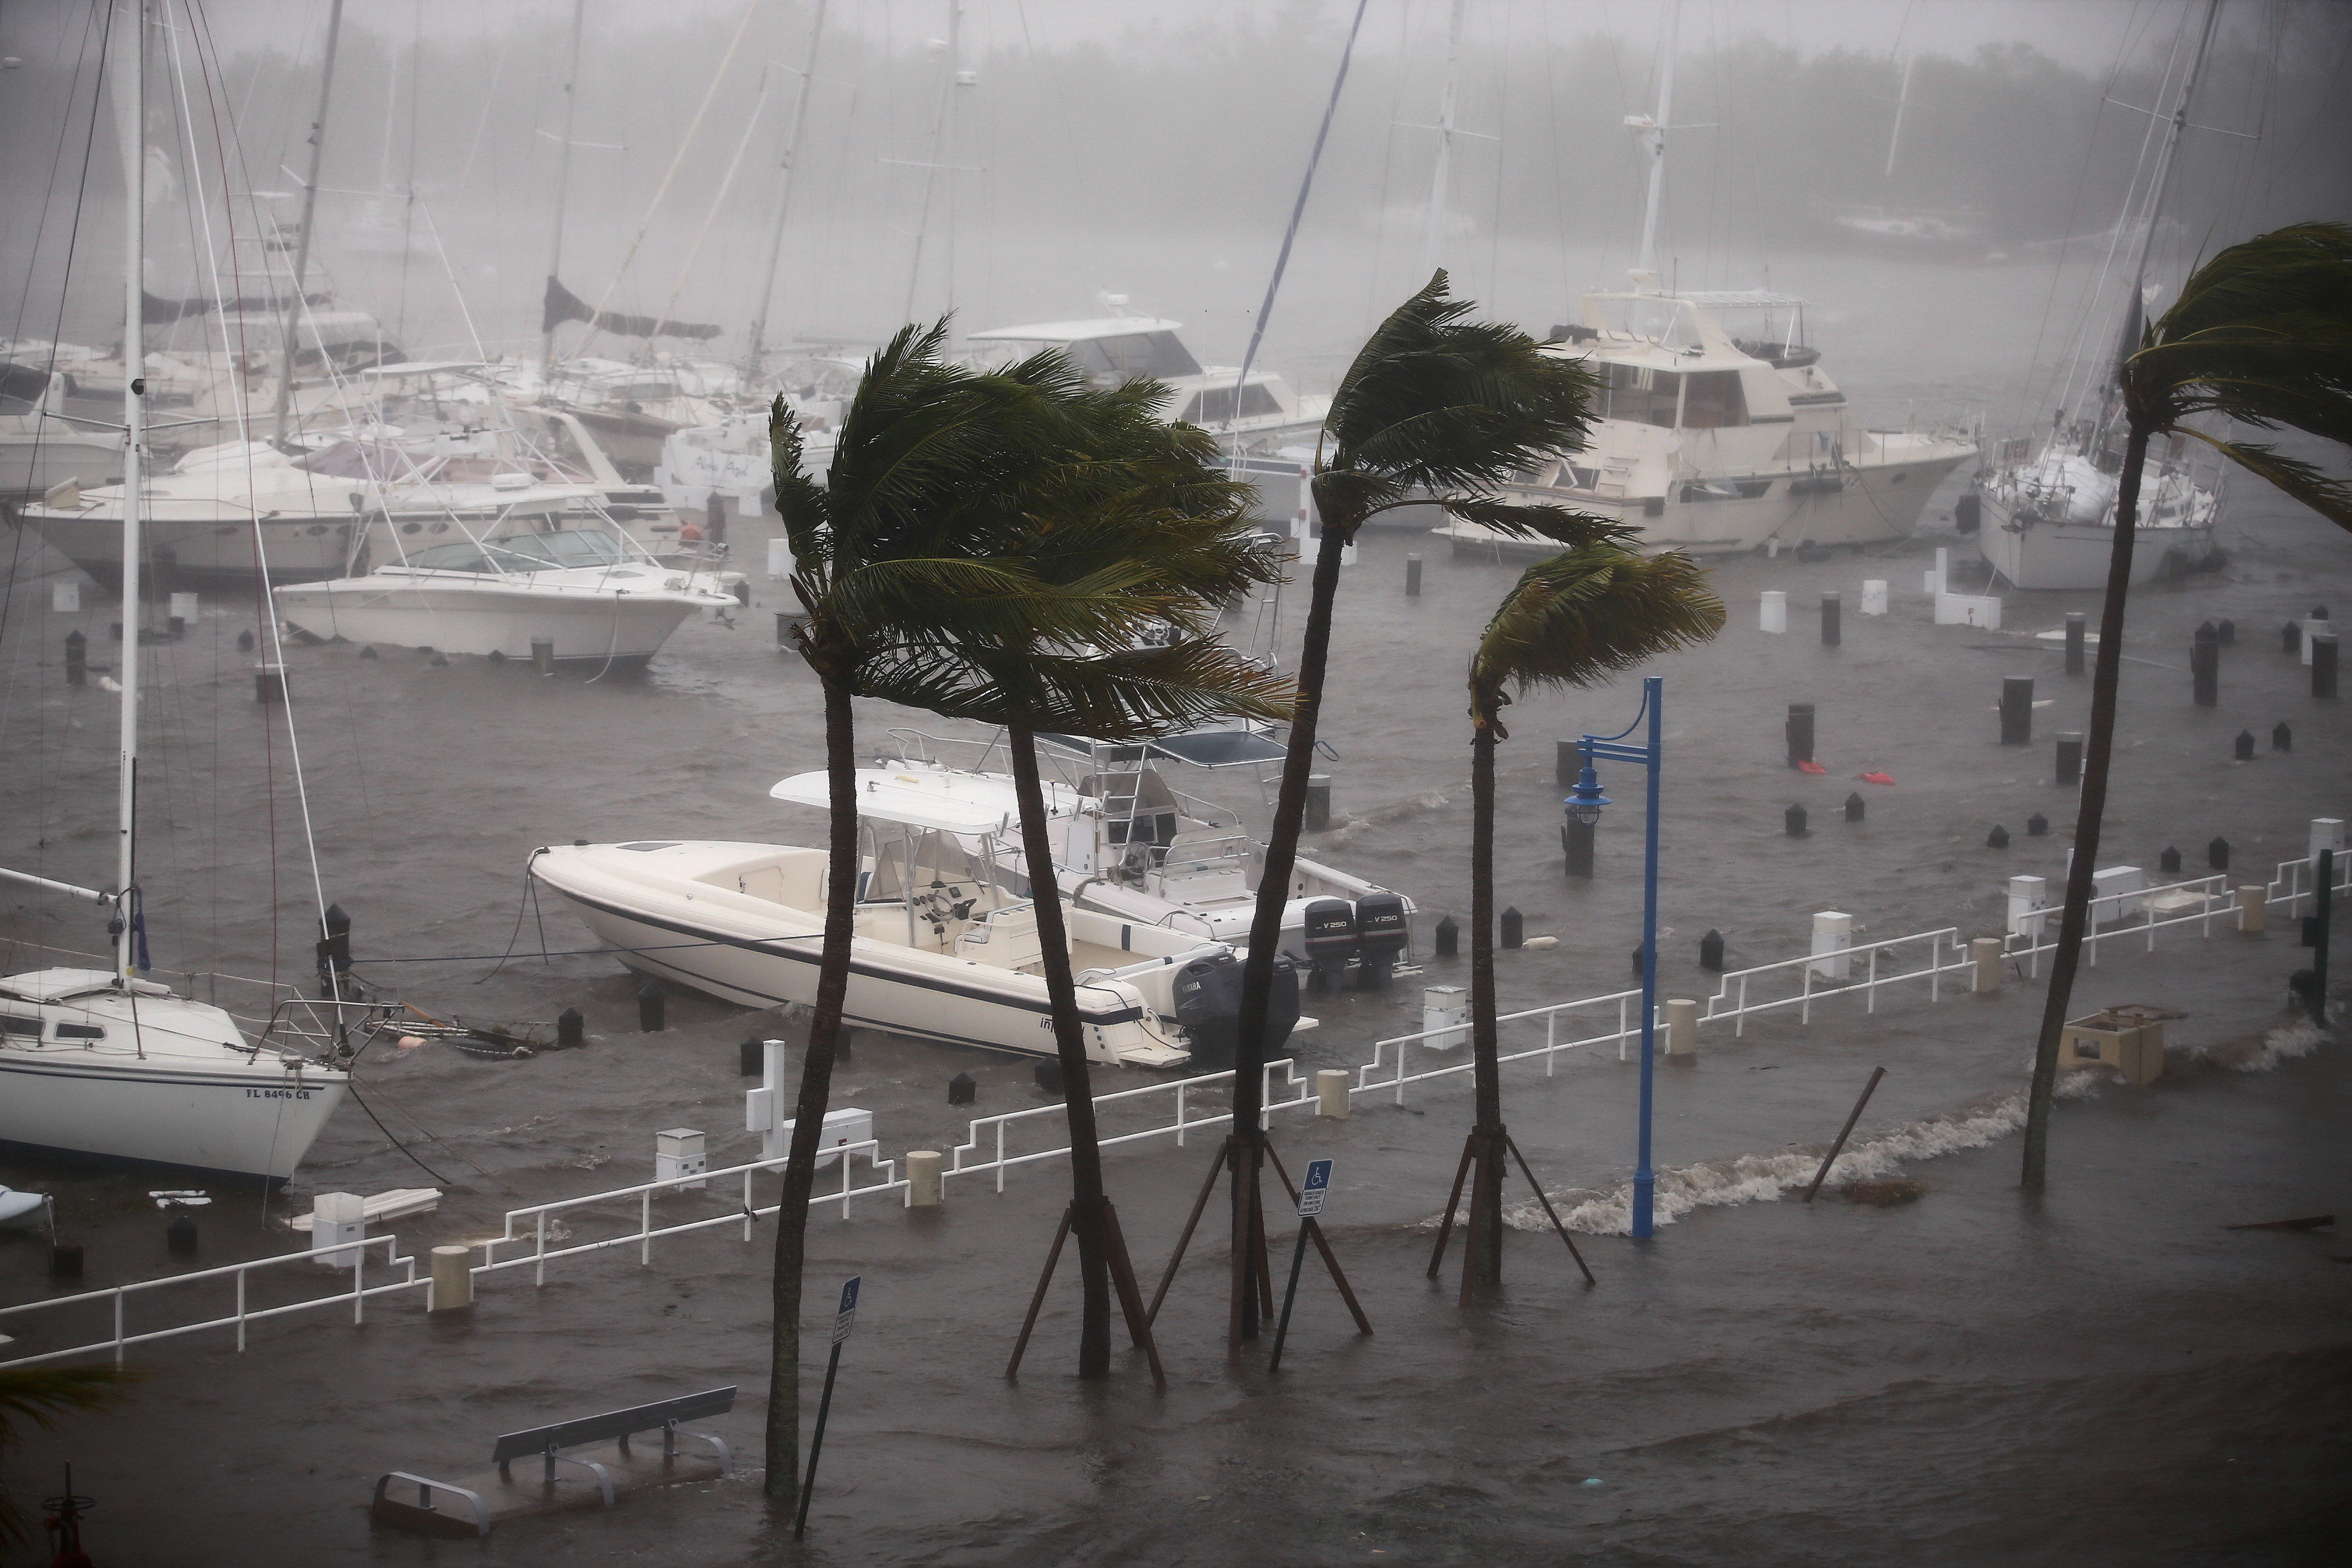  Gió bão càn quét ở khu cảng Coconut Grove thuộc thành phố Miami, bang Florida - Ảnh: REUTERS